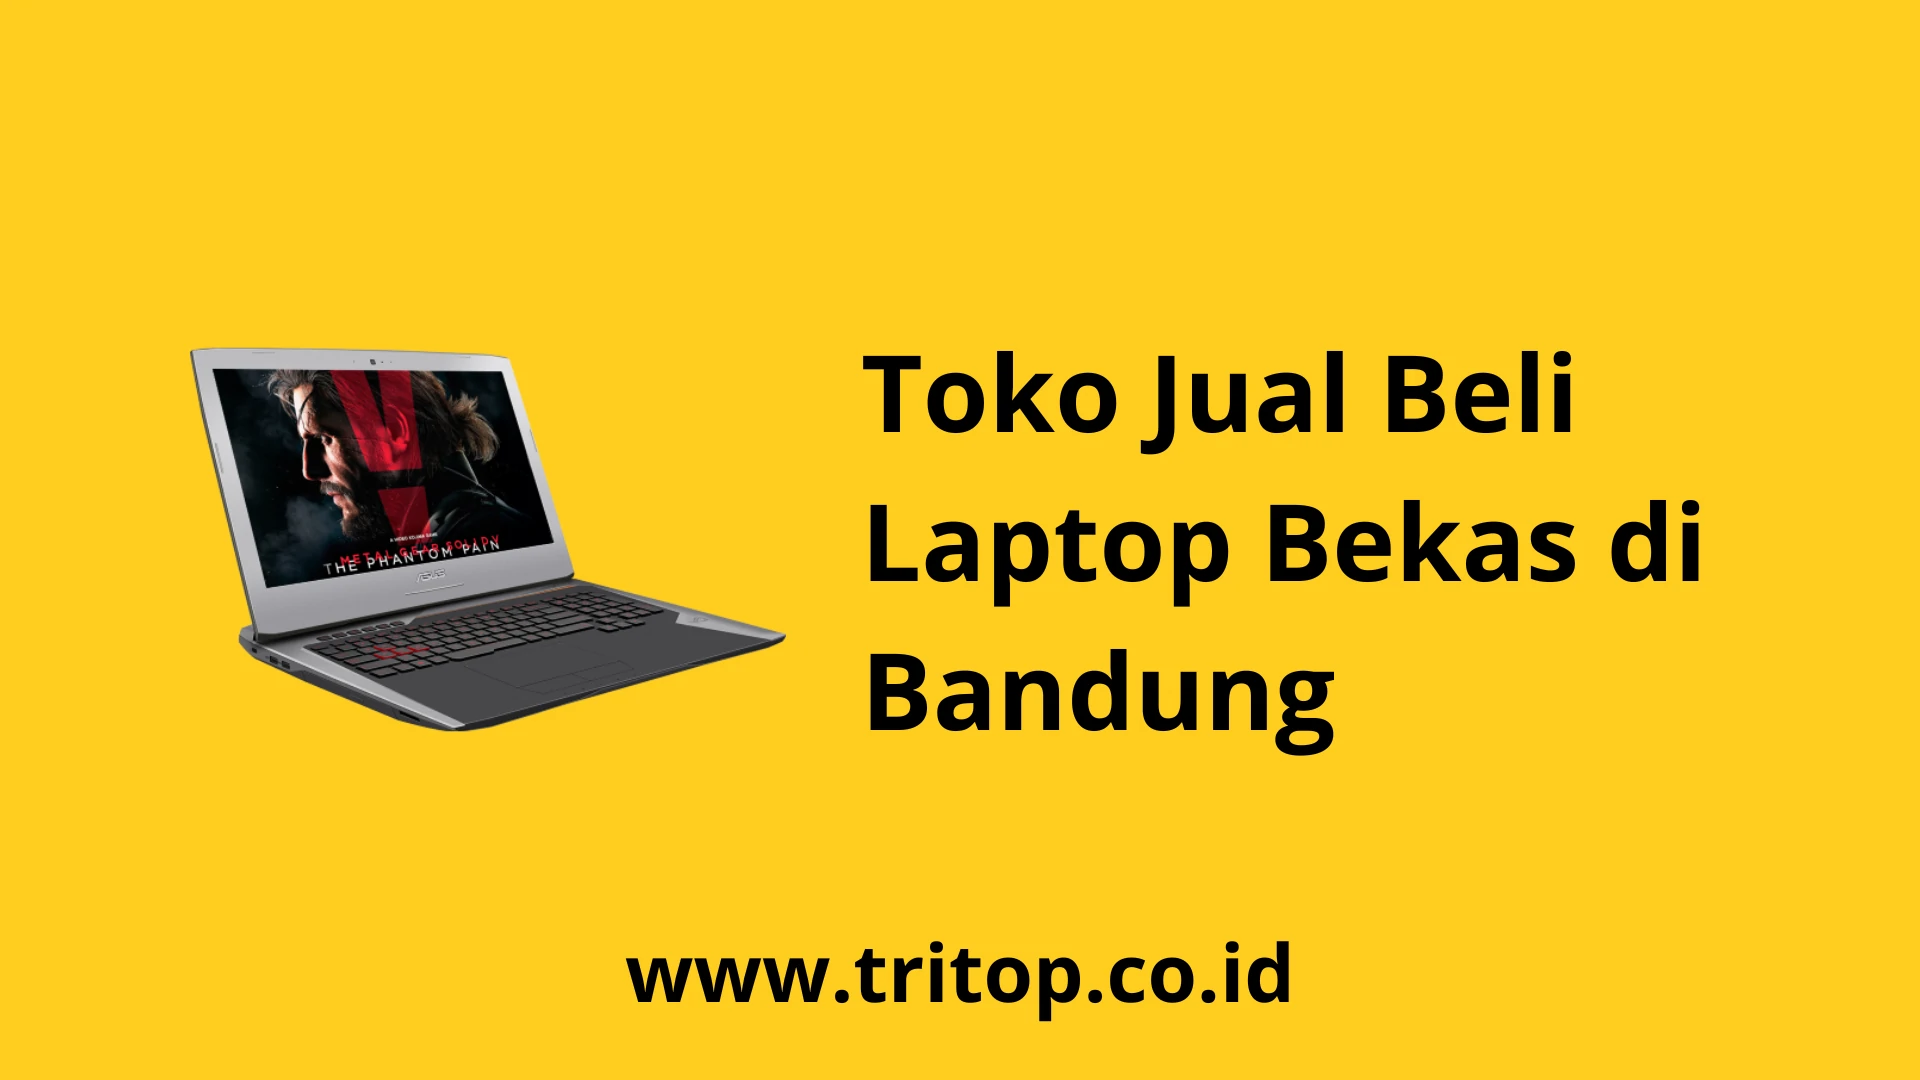 Toko Jual Beli Laptop Bekas Di Bandung www.tritop.co.id